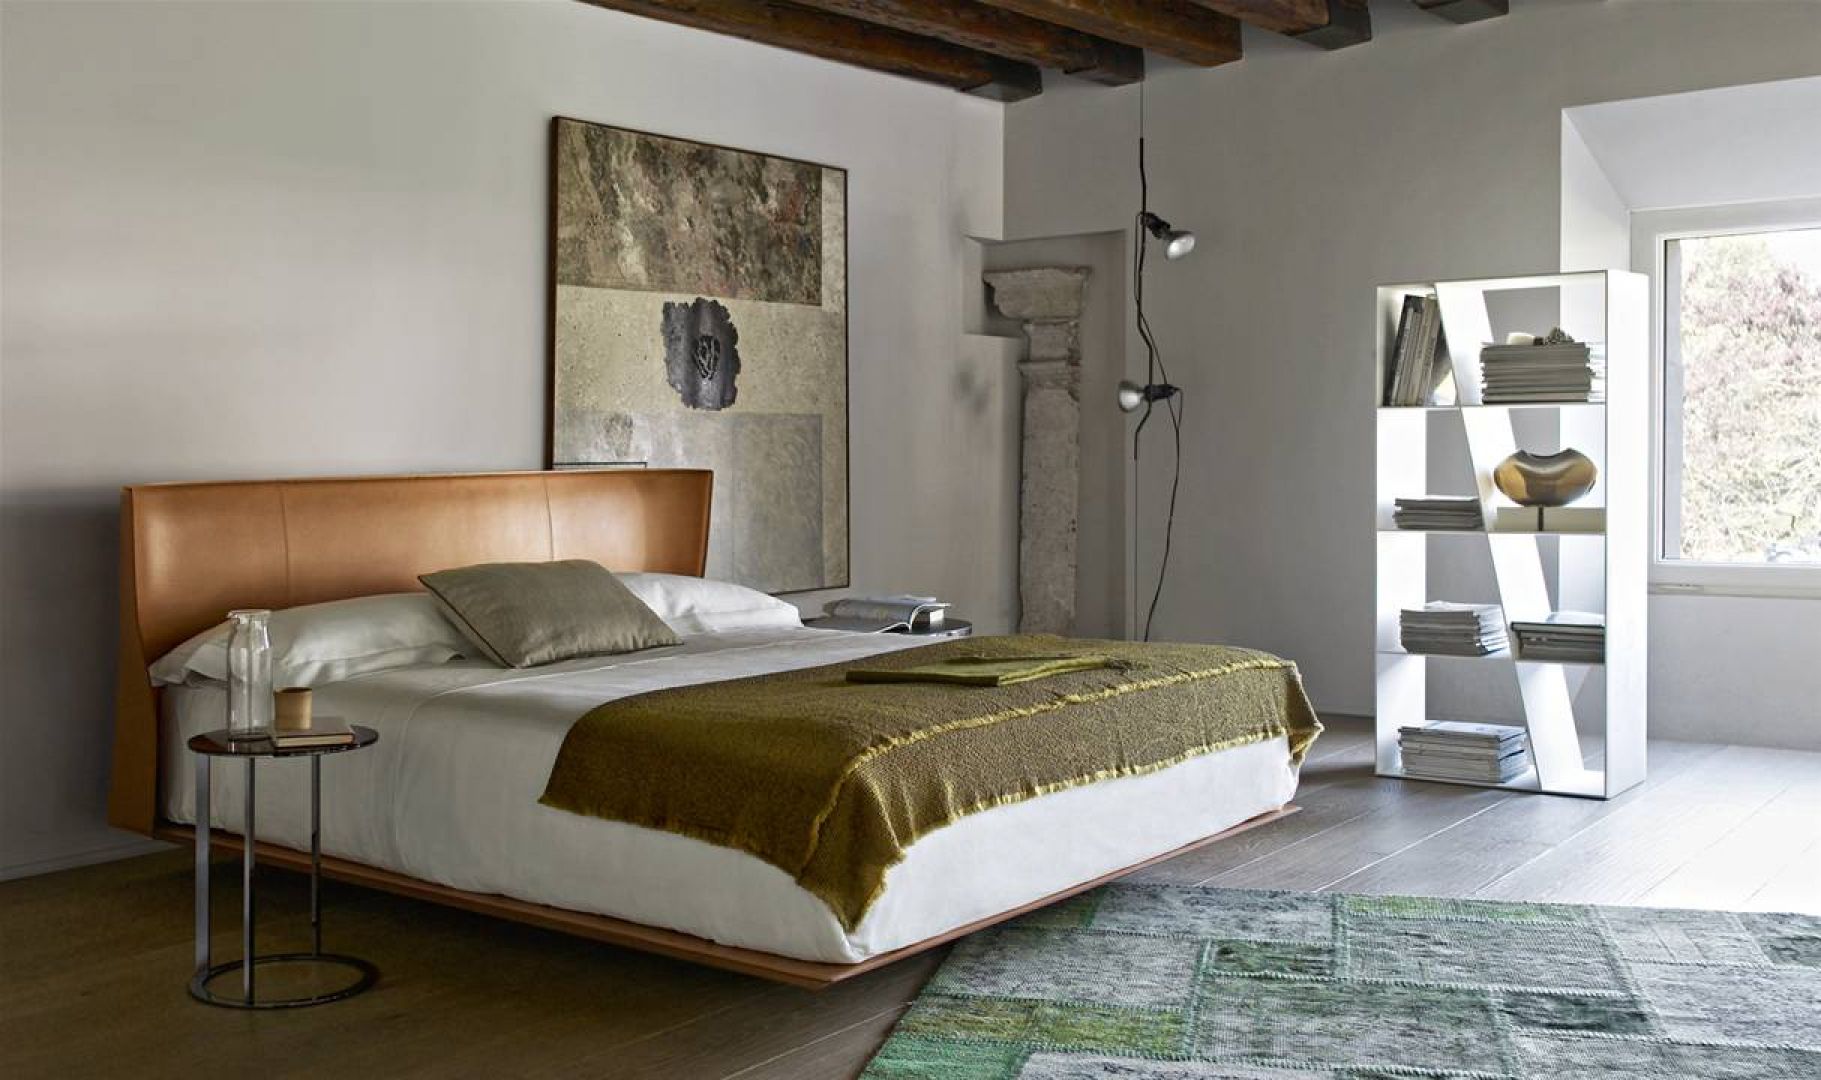 Skórzana rama łóżka to propozycja do eleganckiej sypialni. Z pewnością spodoba się mężczyznom, bowiem ma nieco męski charakter. Fot.BB Italia